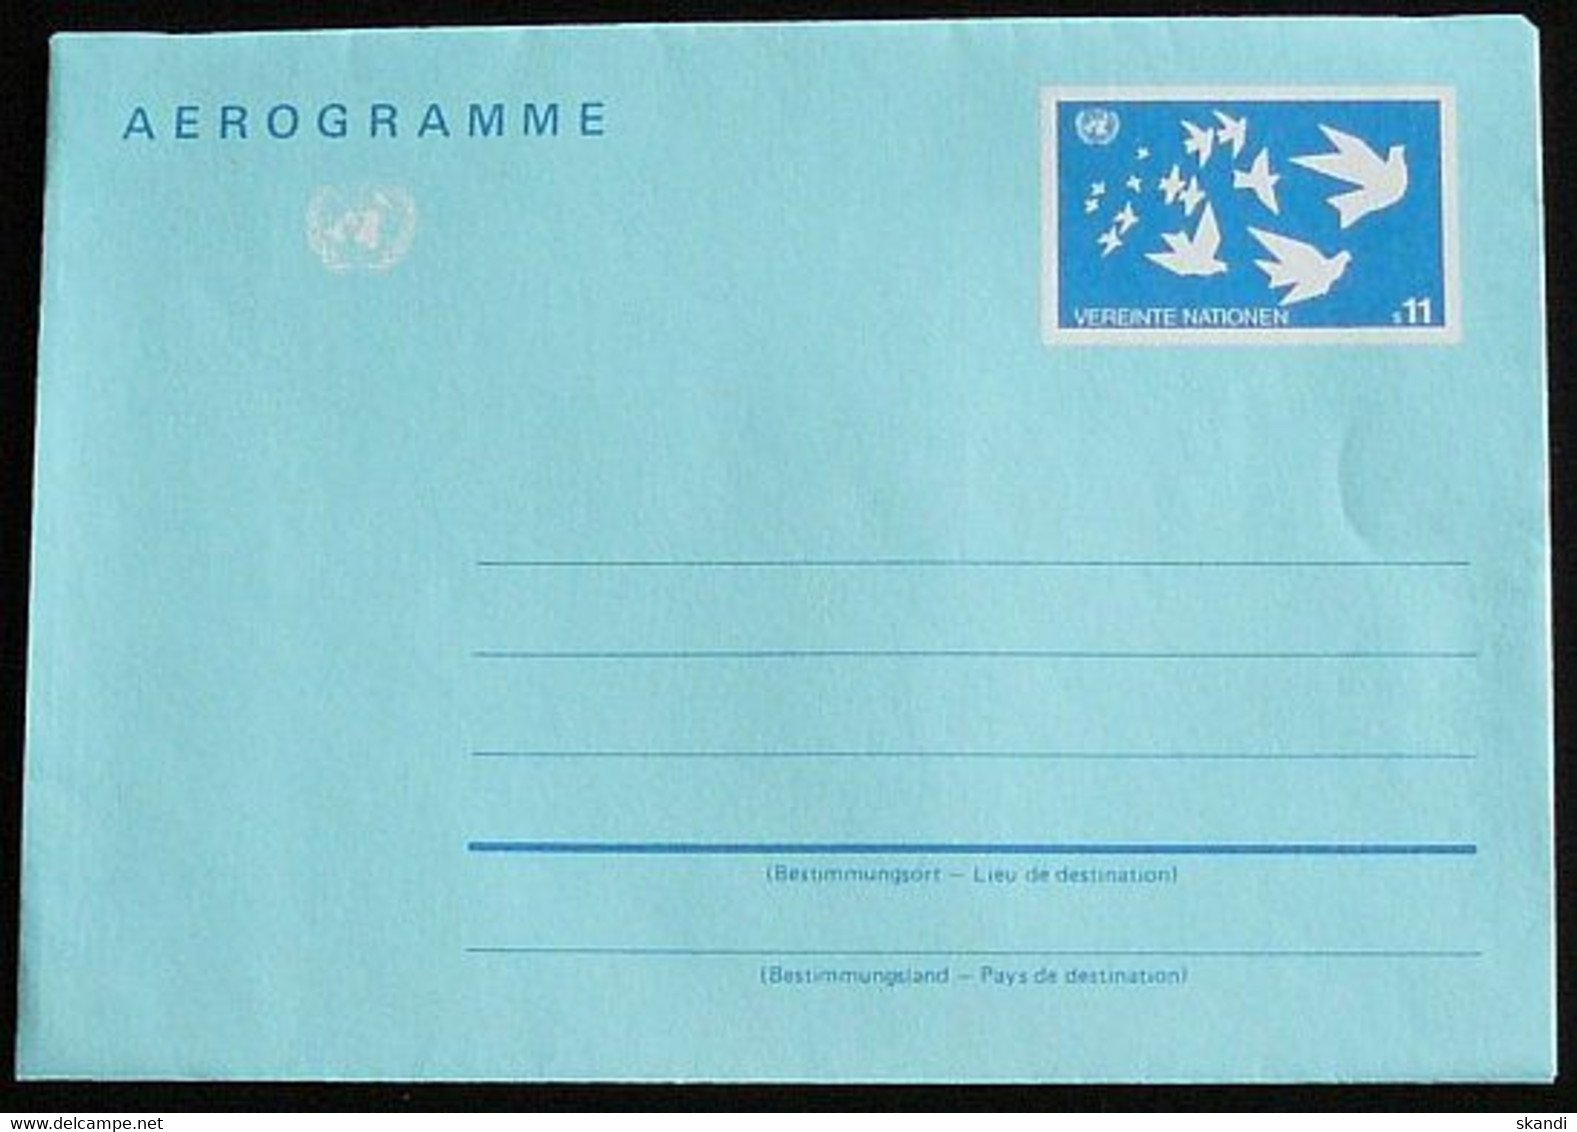 UNO WIEN 1987 Mi-Nr. LF 3 Luftpostfaltbrief Aerogramme Ungebraucht - Covers & Documents